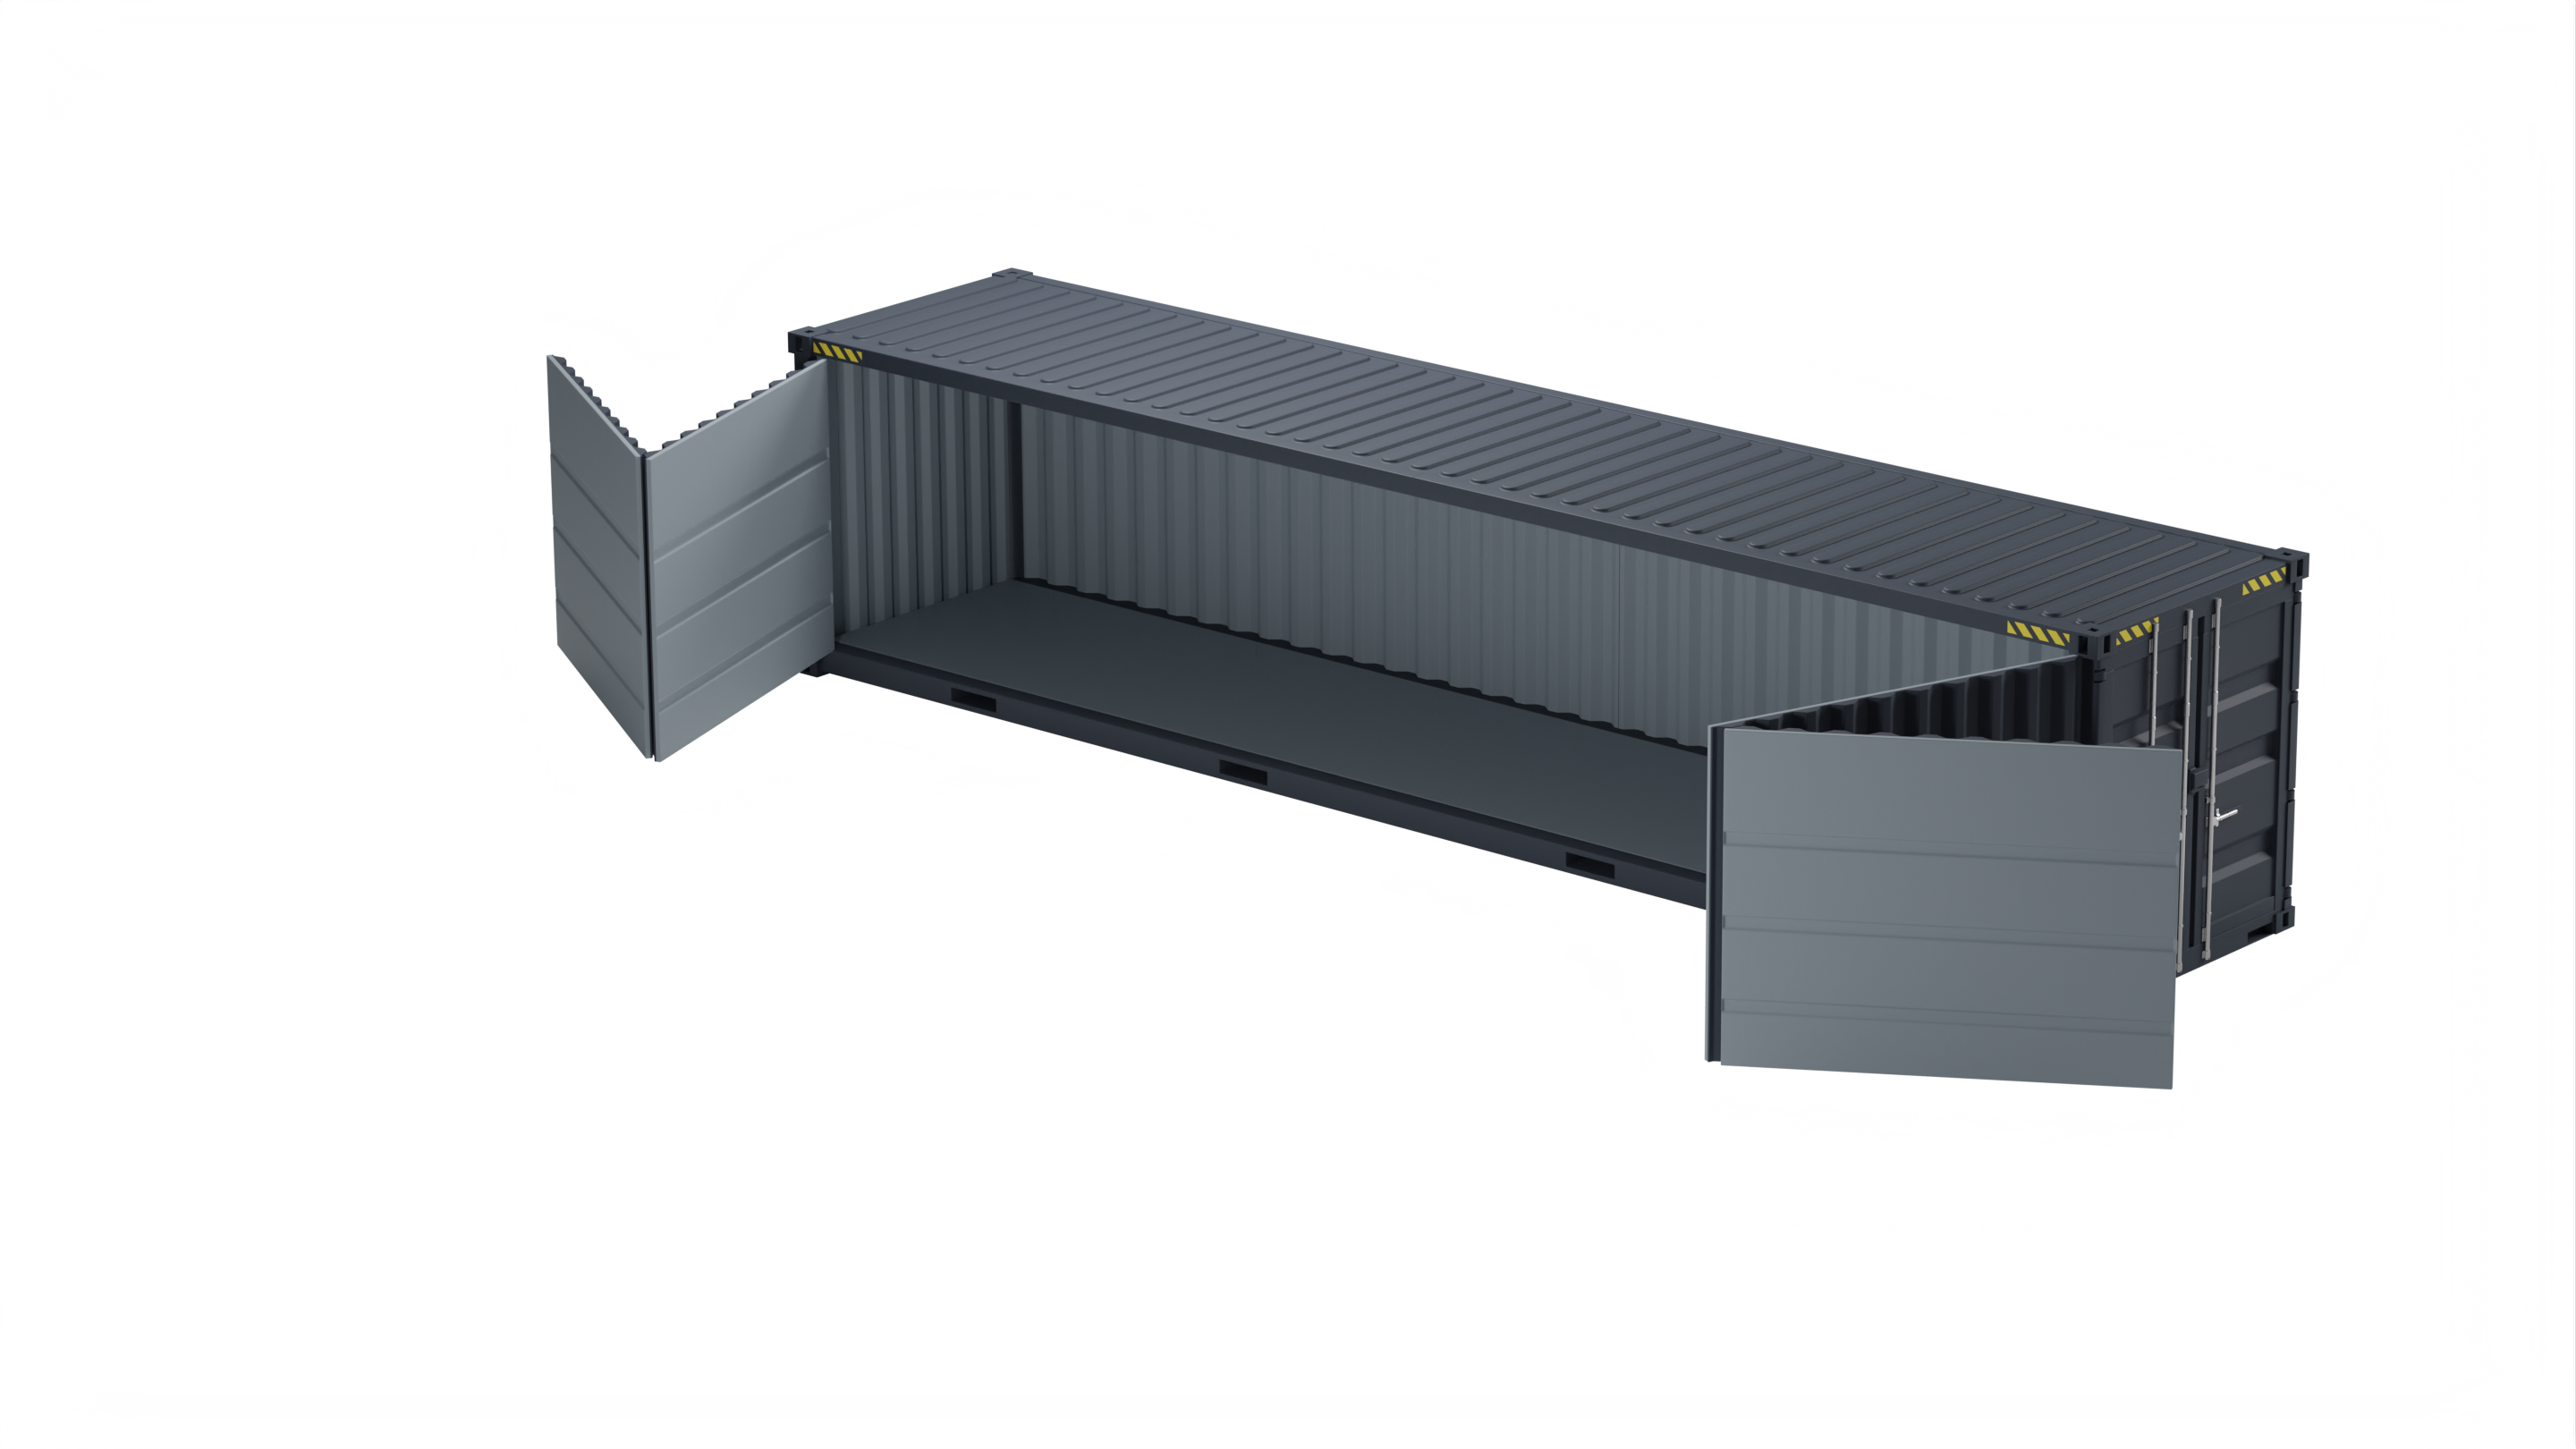 Container maritime 40 pieds openside disponible neuf et d'occasion pour stockage flexible, adaptable et économique- eurobox_0